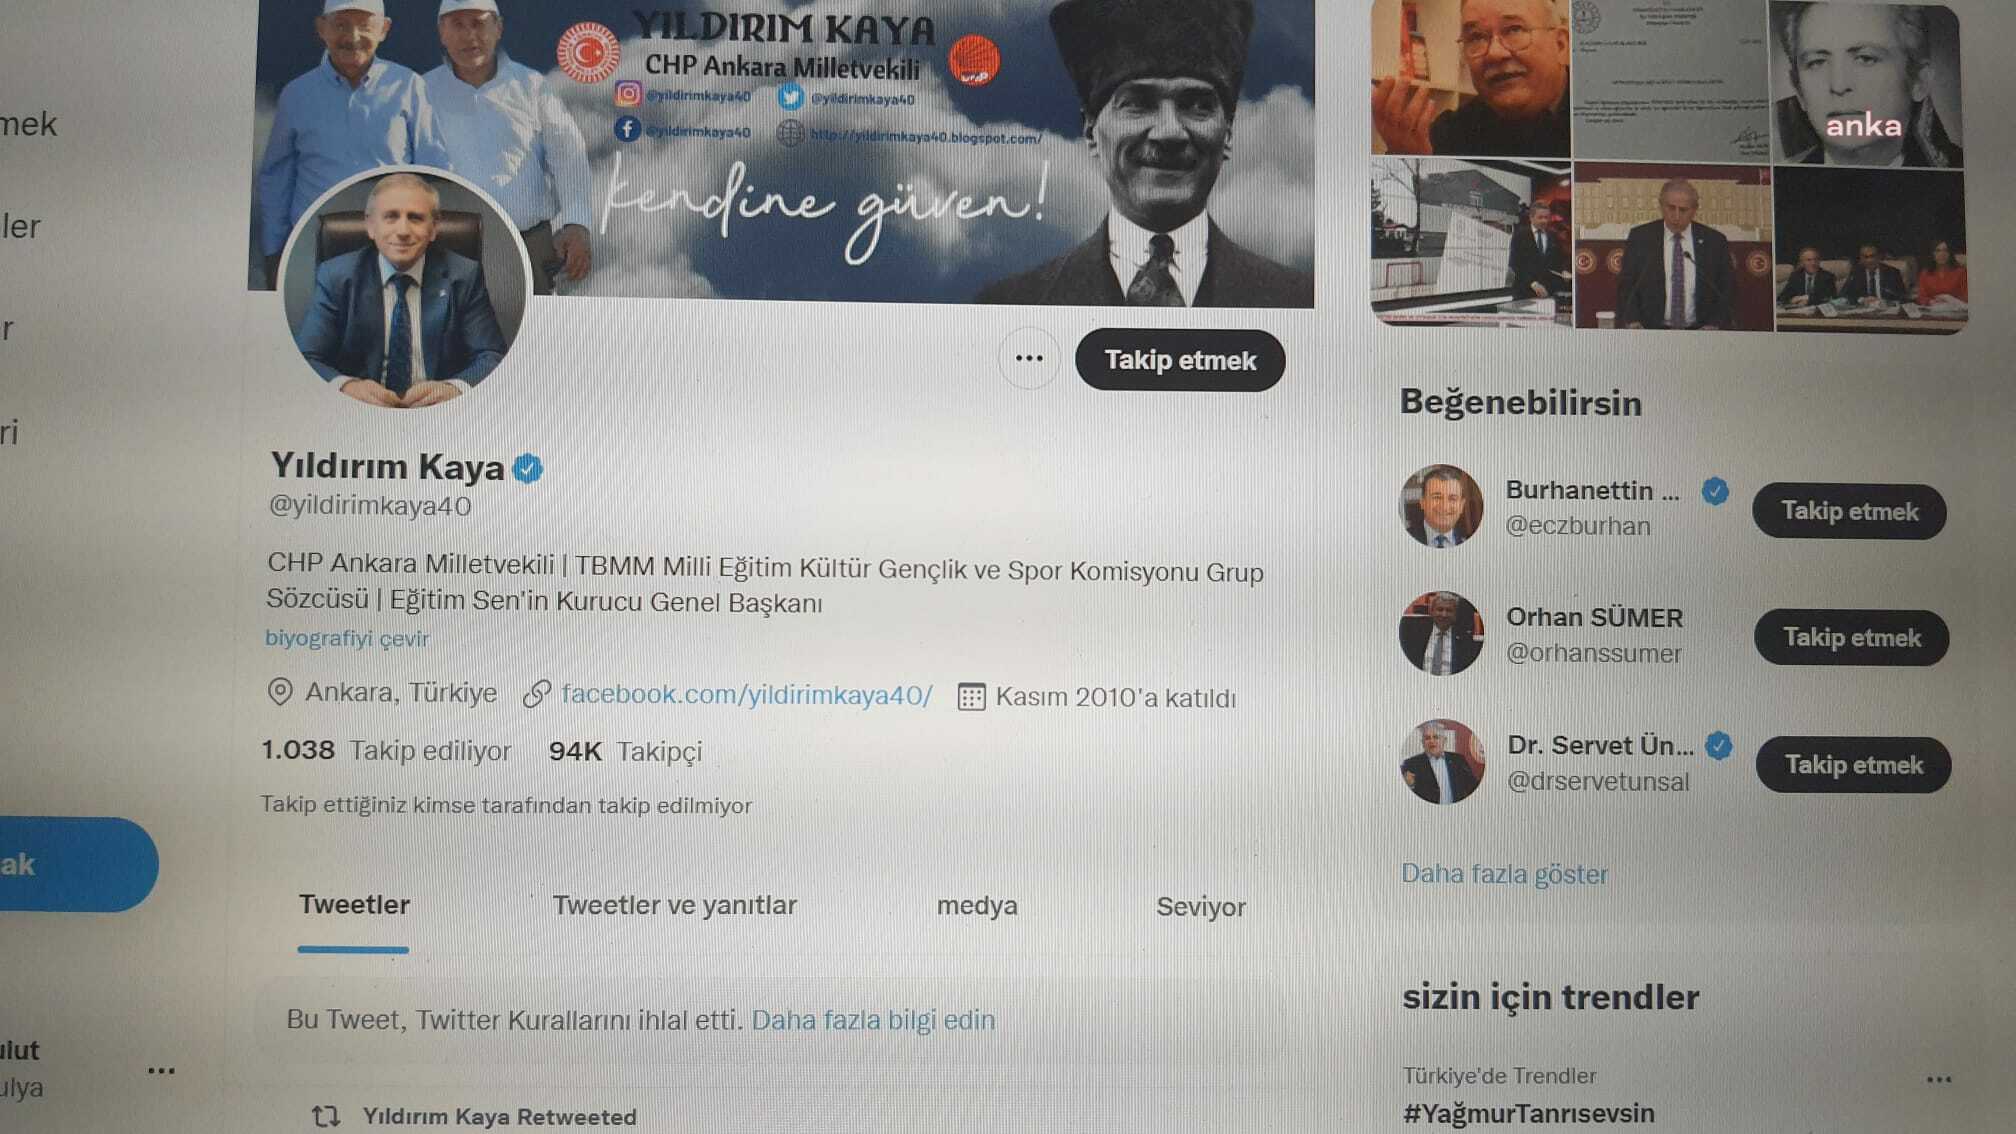 Tarikat yurdundaki şiddeti paylaşmıştı: Twitter CHP'li Yıldırım Kaya'nın hesabını dondurdu